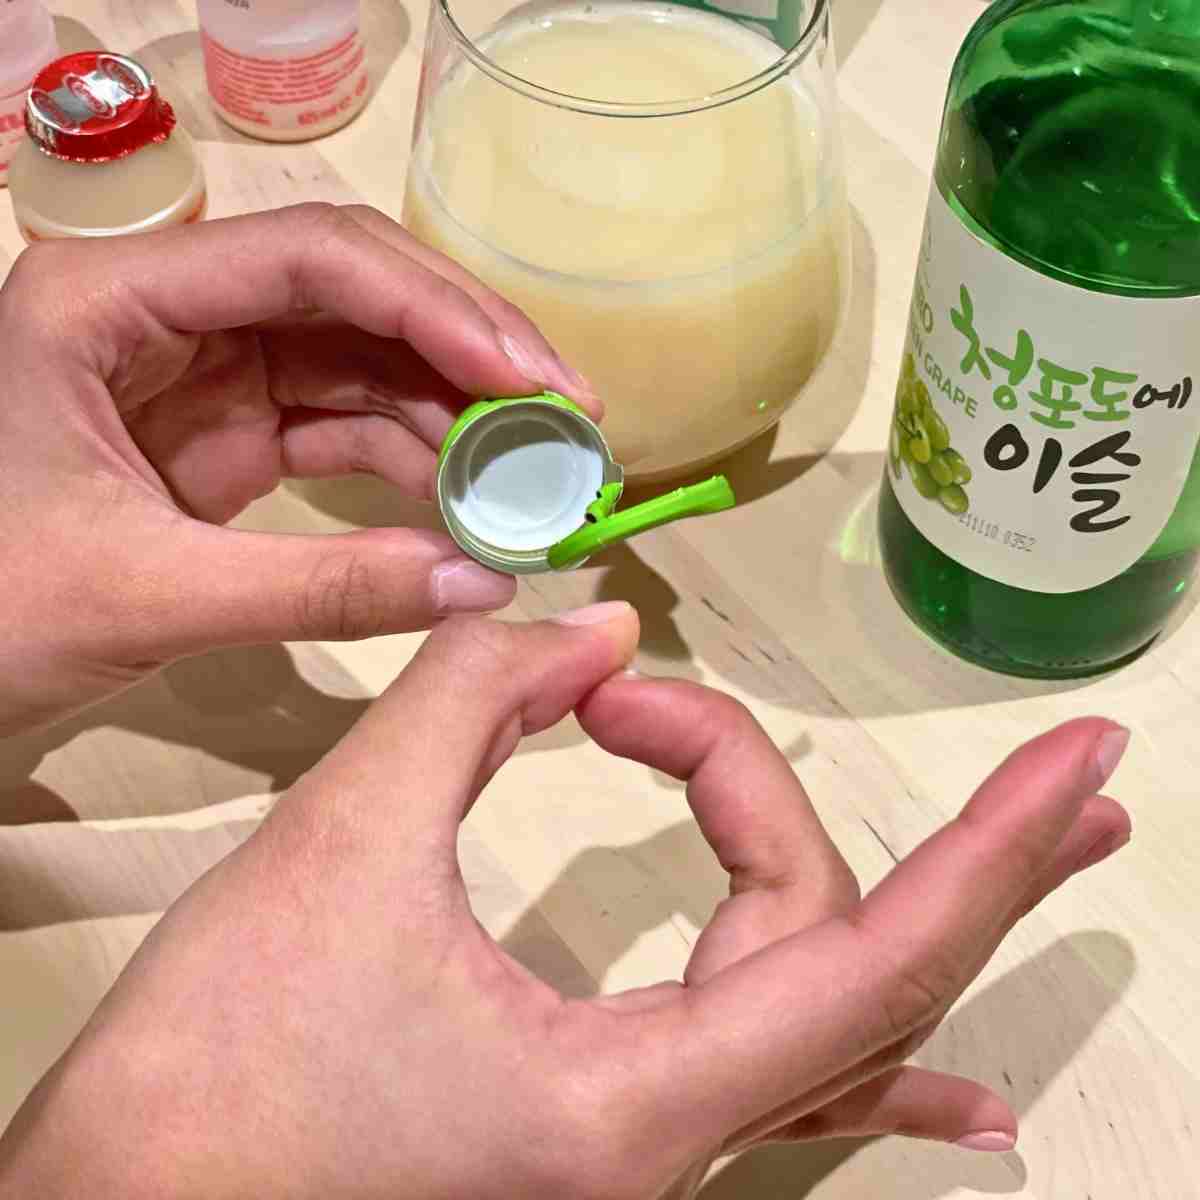 flick soju cap drinking game